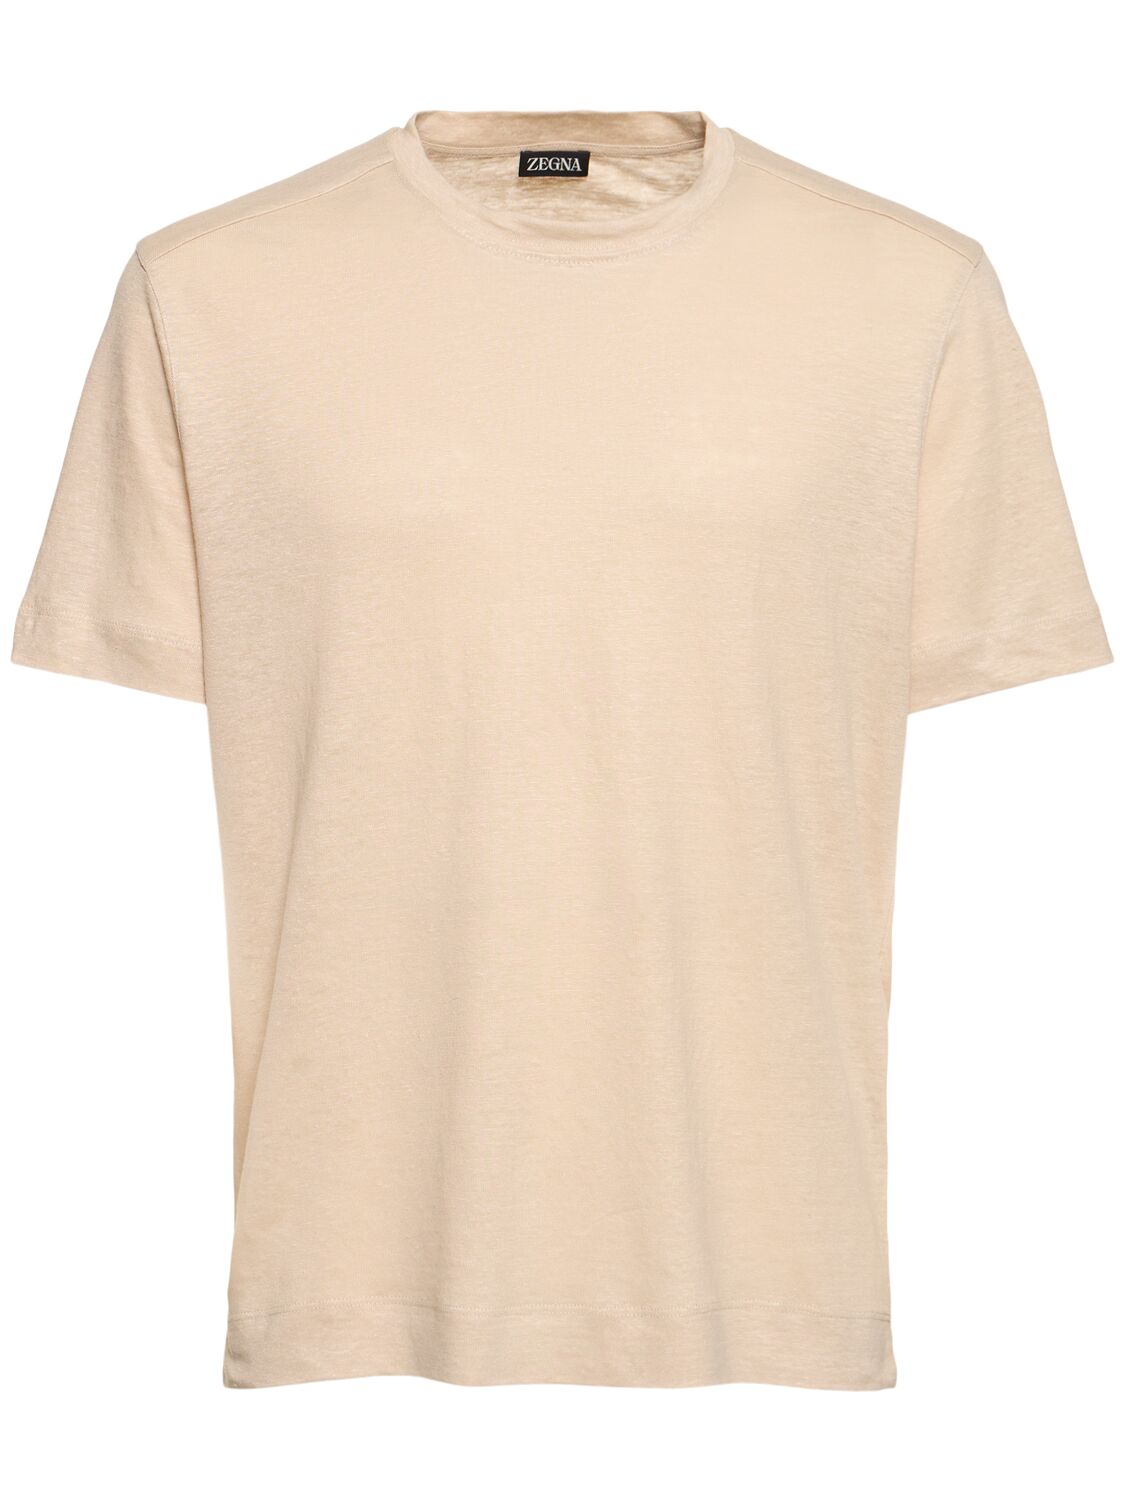 Zegna Pure Linen Jersey T-shirt In Light Beige